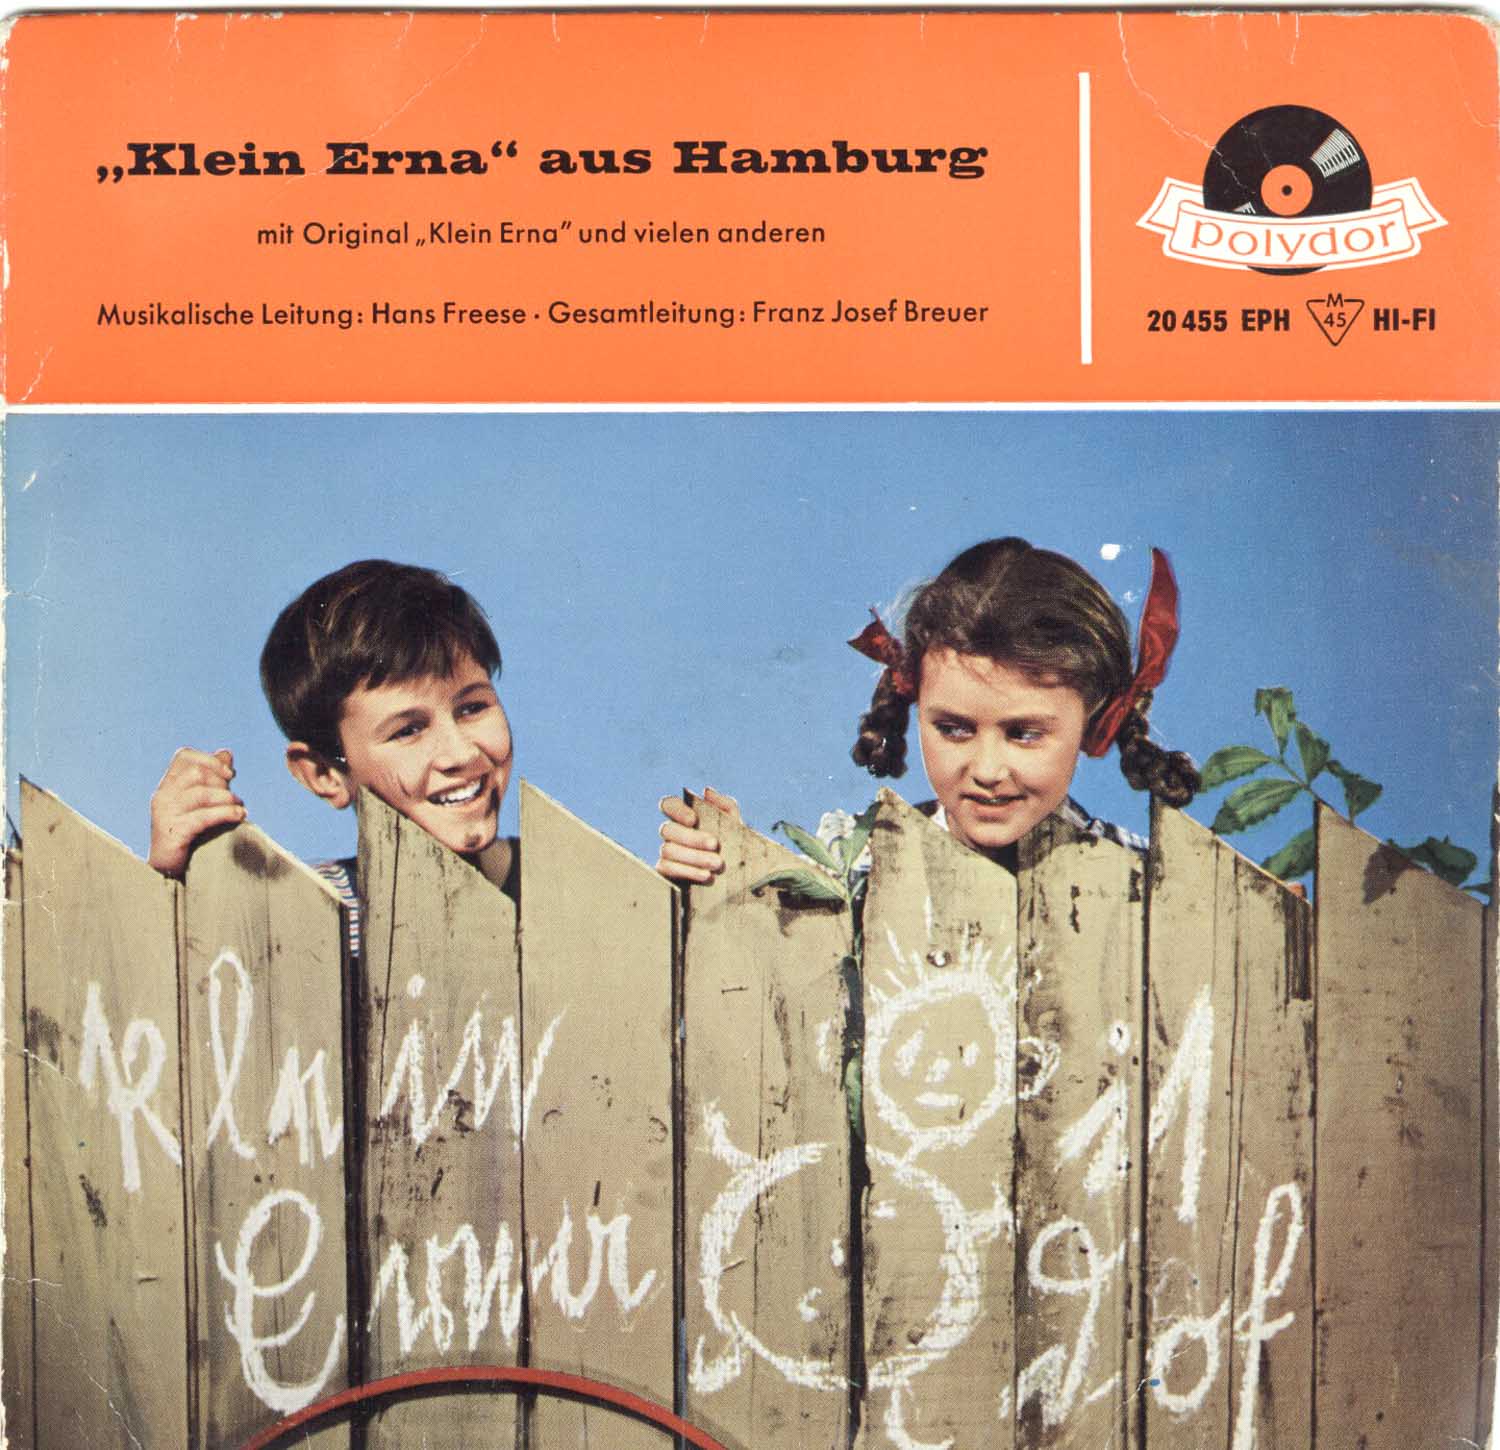 Hans Freese (Musikalische Leitung), Franz Josef Breuer (Gesamtleitung)  "Klein Erna" aus Hamburg mit Original "Klein Erna" und vielen anderen  *Single 7'' (Vinyl)*. 